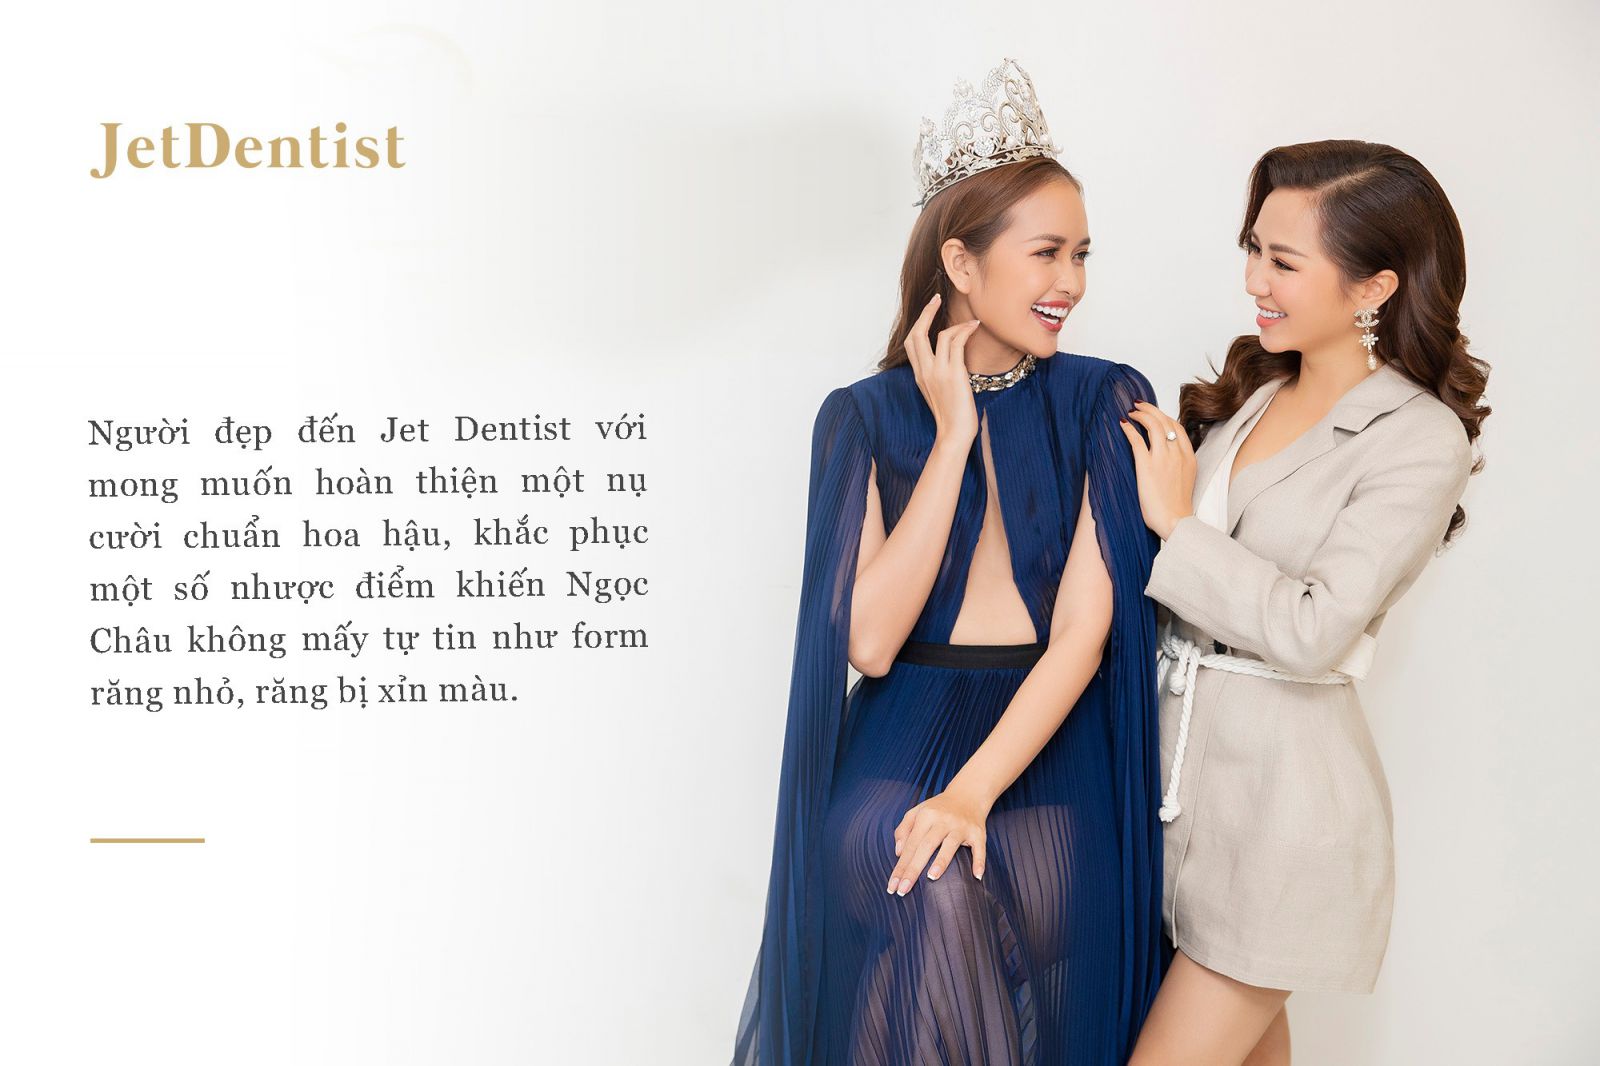 Hoa hậu Ngọc Châu - Nụ cười tươi sáng là hành trang vững chắc cho lần chinh chiến tại Miss Supranational 2019